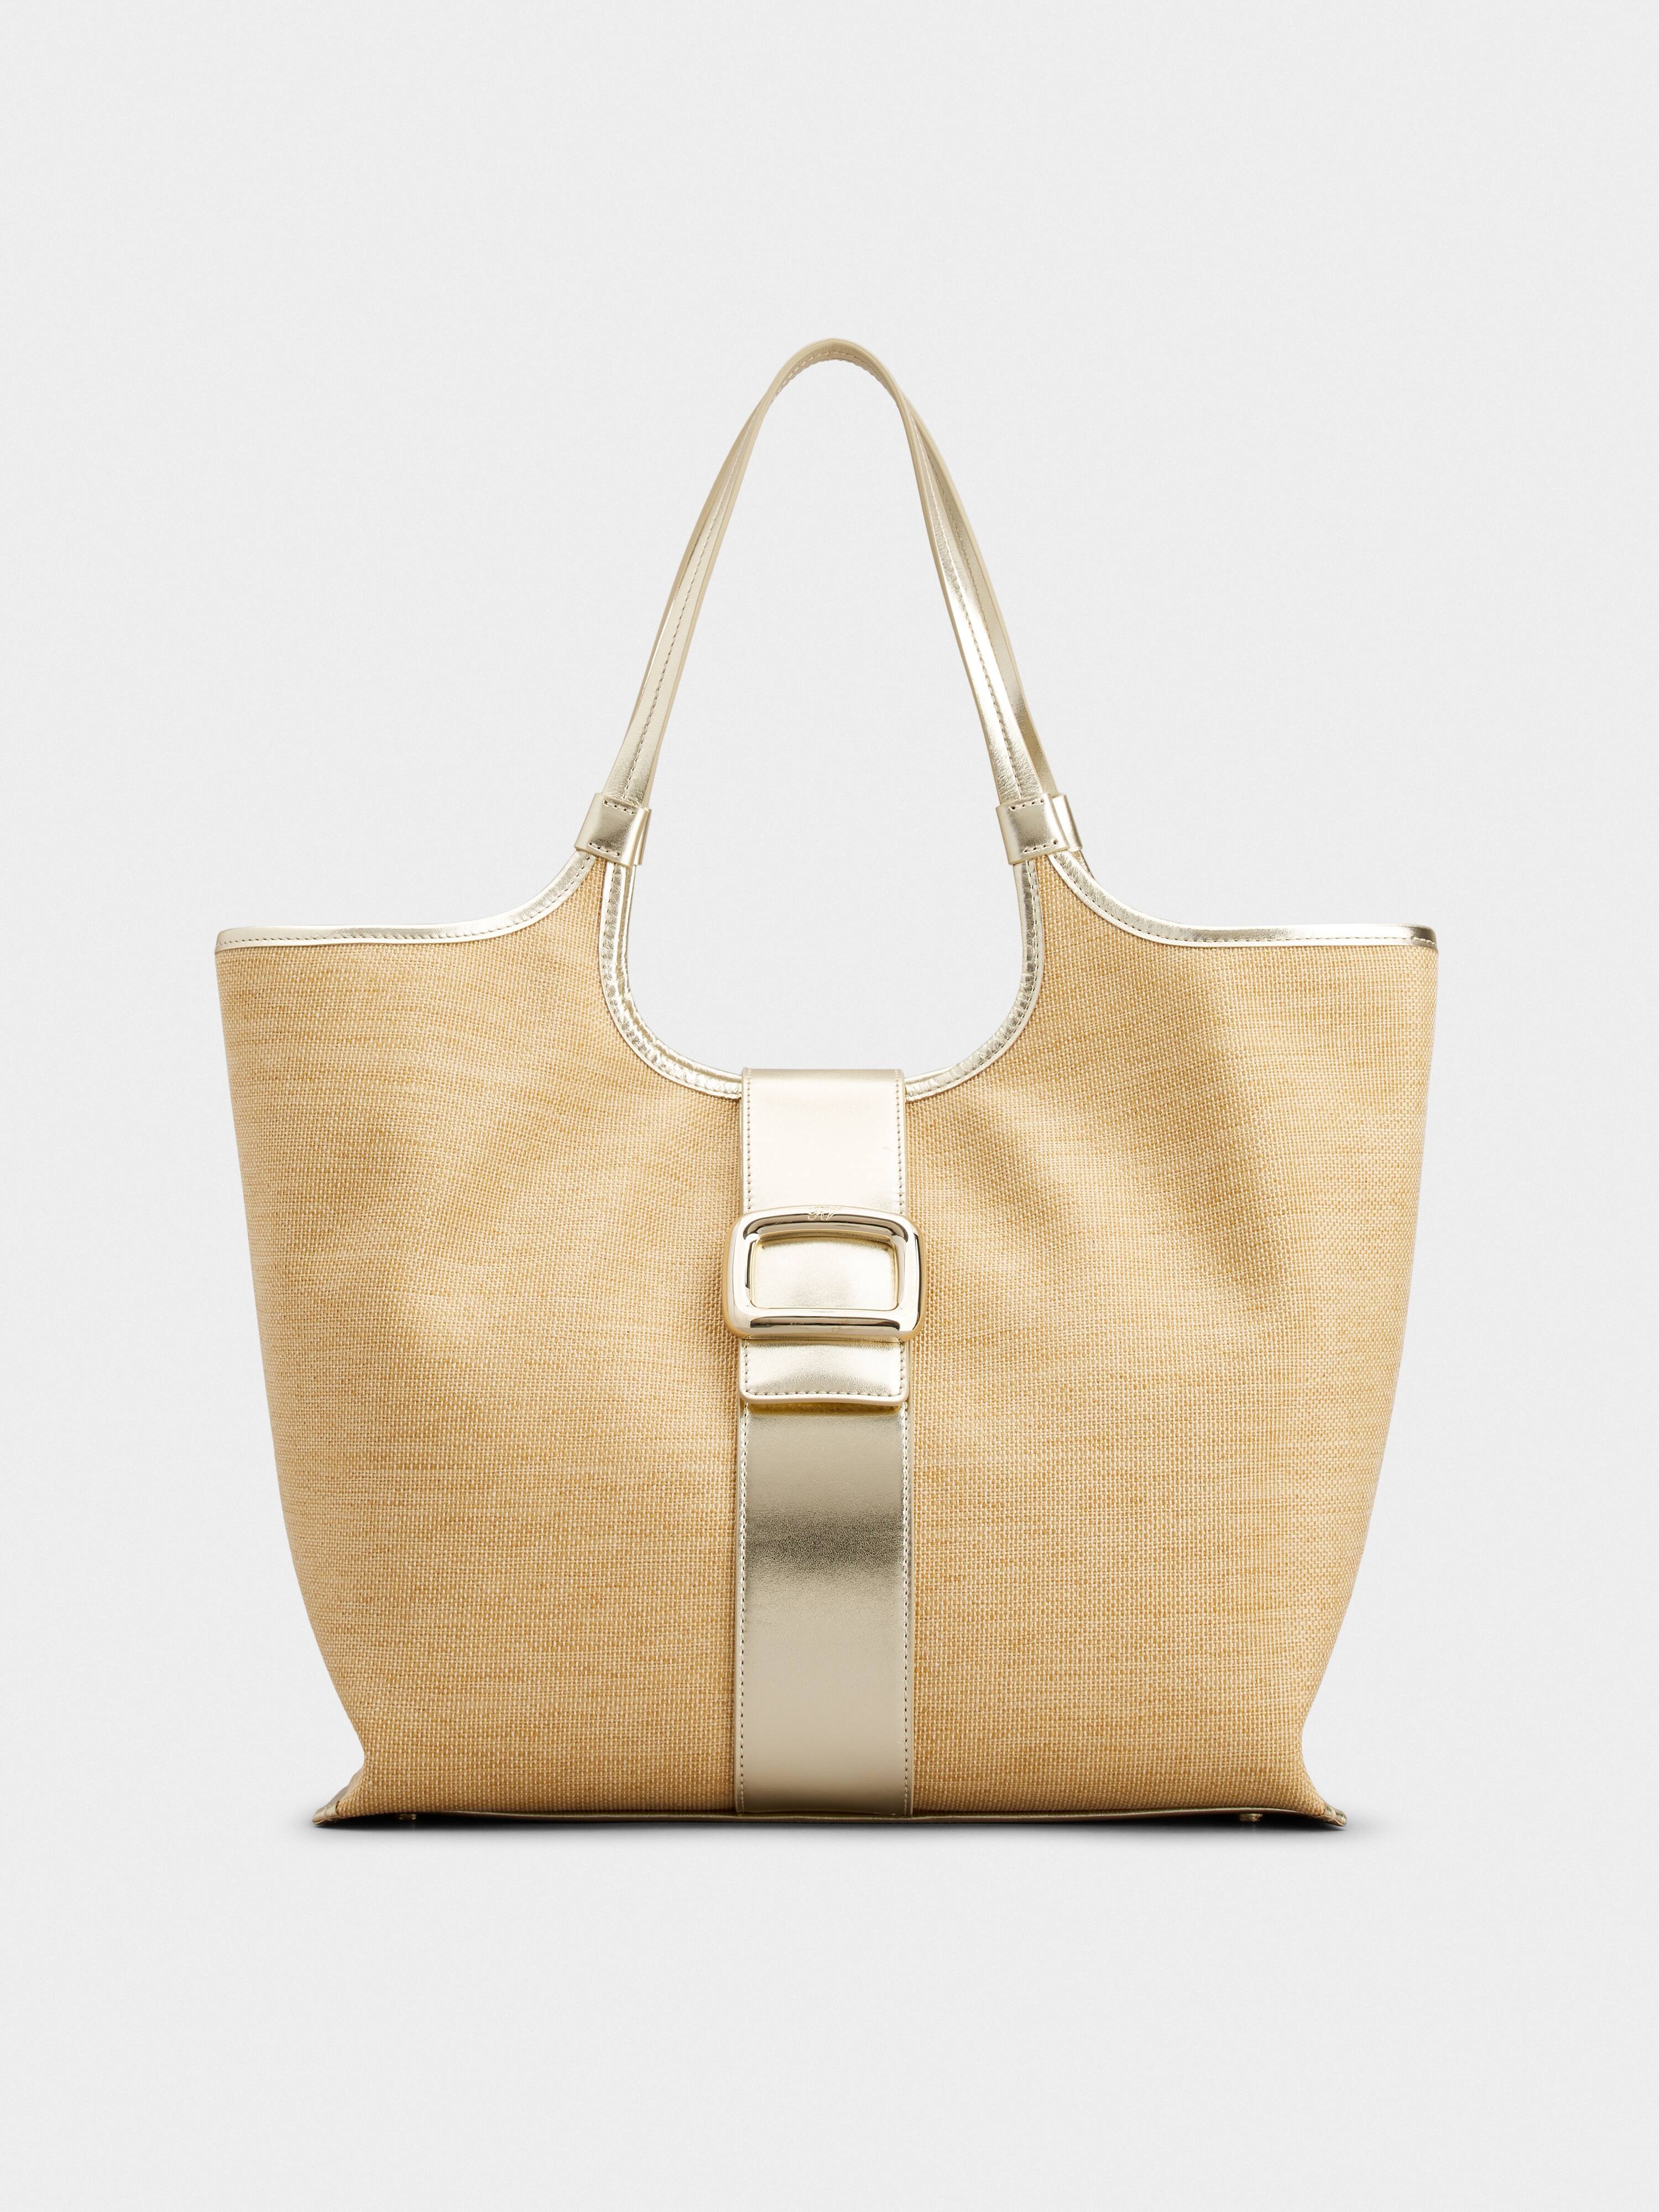 Viv' Choc Medium Shopping Bag in Fabric - 1